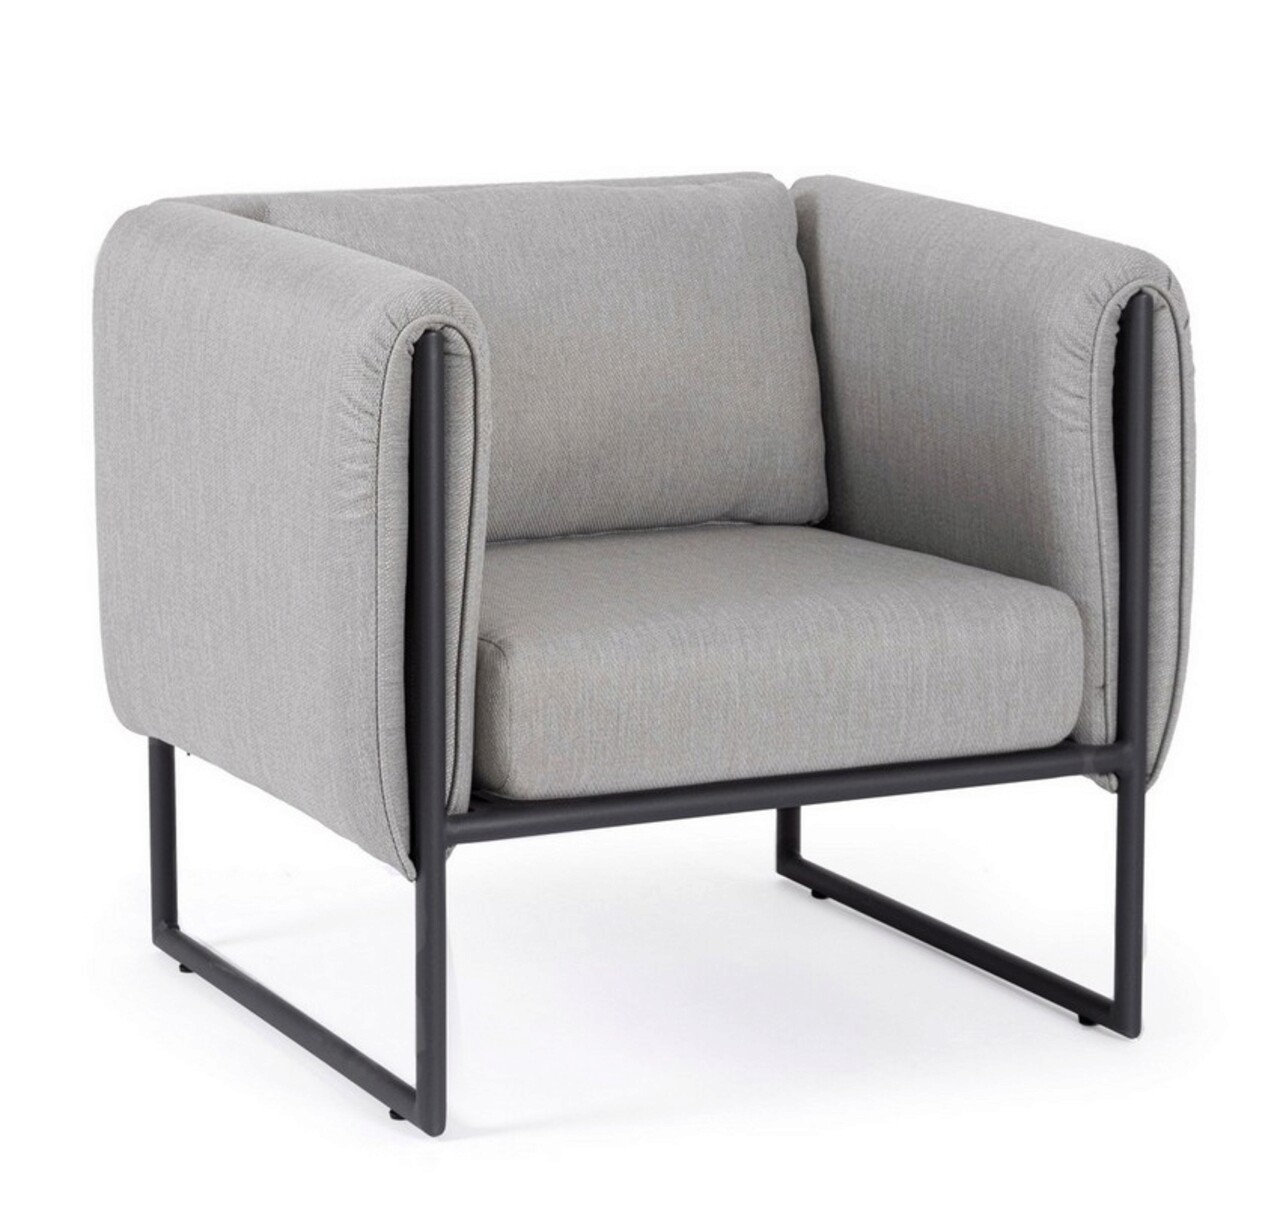 Pixel Kerti/terasz fotel, Bizzotto, 76 x 74 x 72 cm, alumínium/olefin szövet, grafitszürke